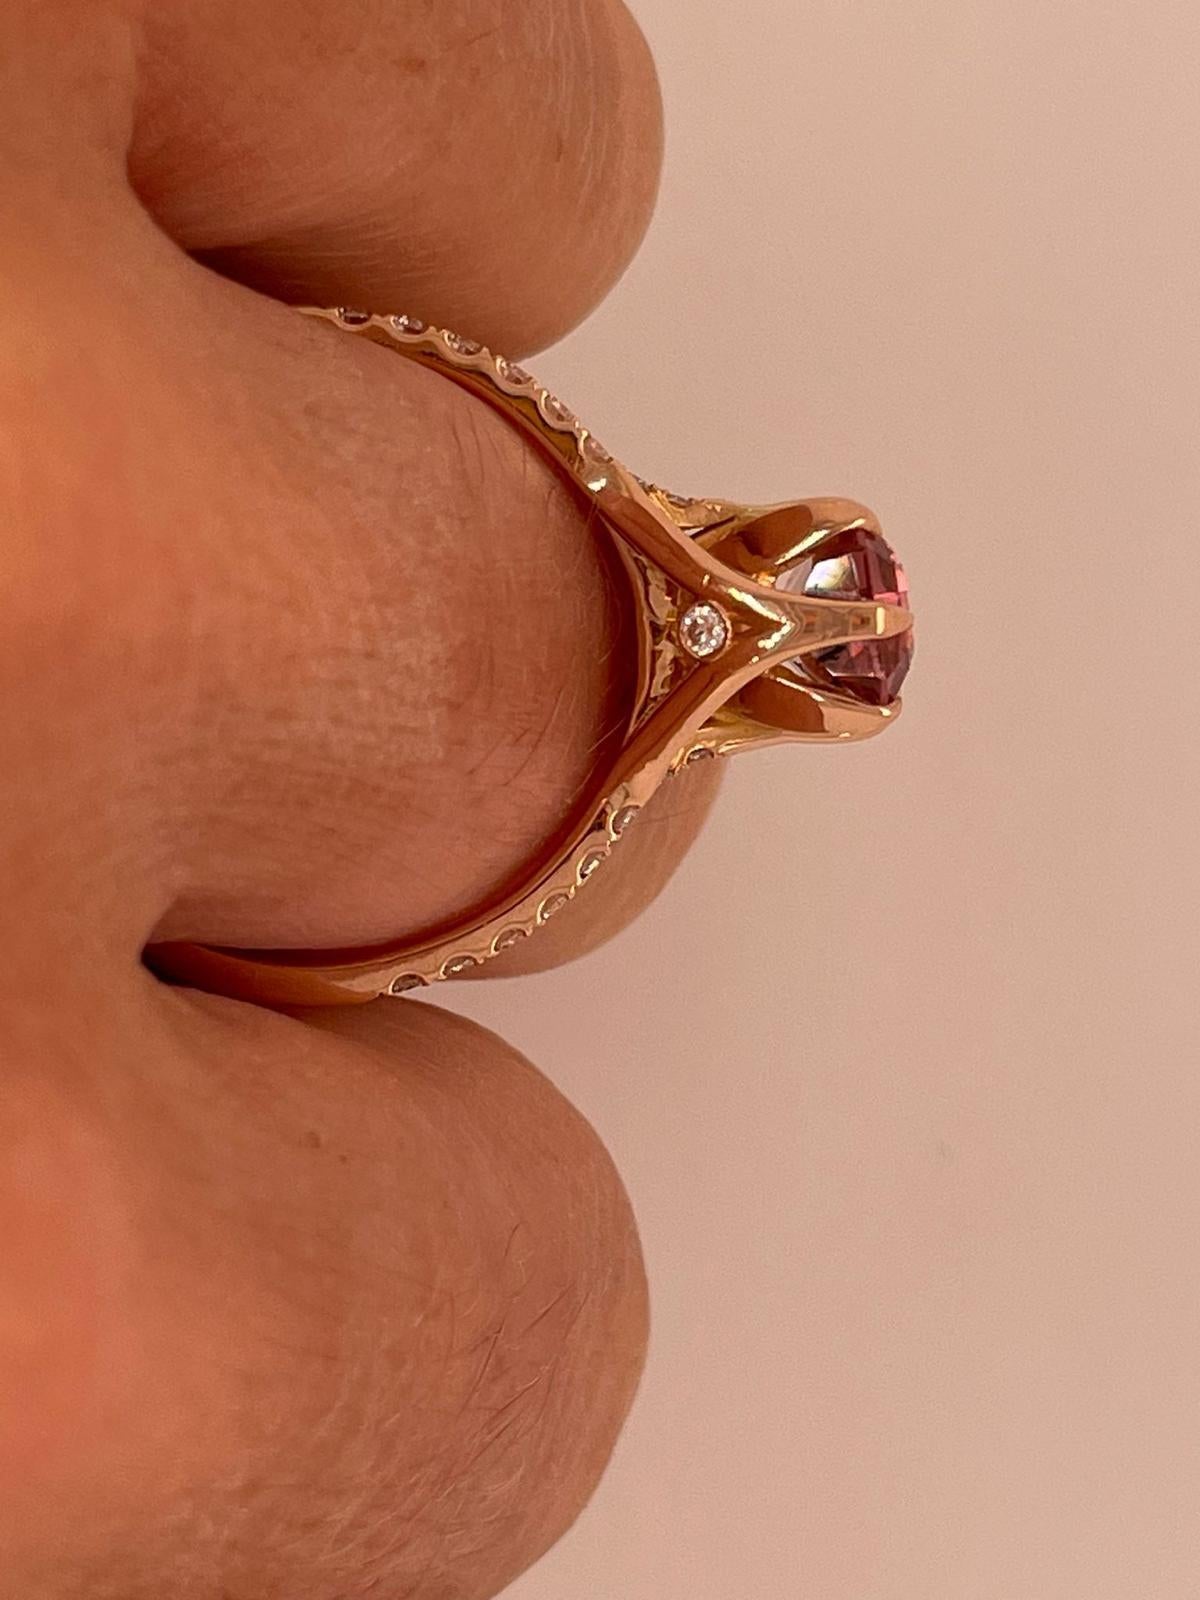 En vente :  Bague en or rose 18ct ornée d'une tourmaline rose et d'un diamant de 2,06ct  10